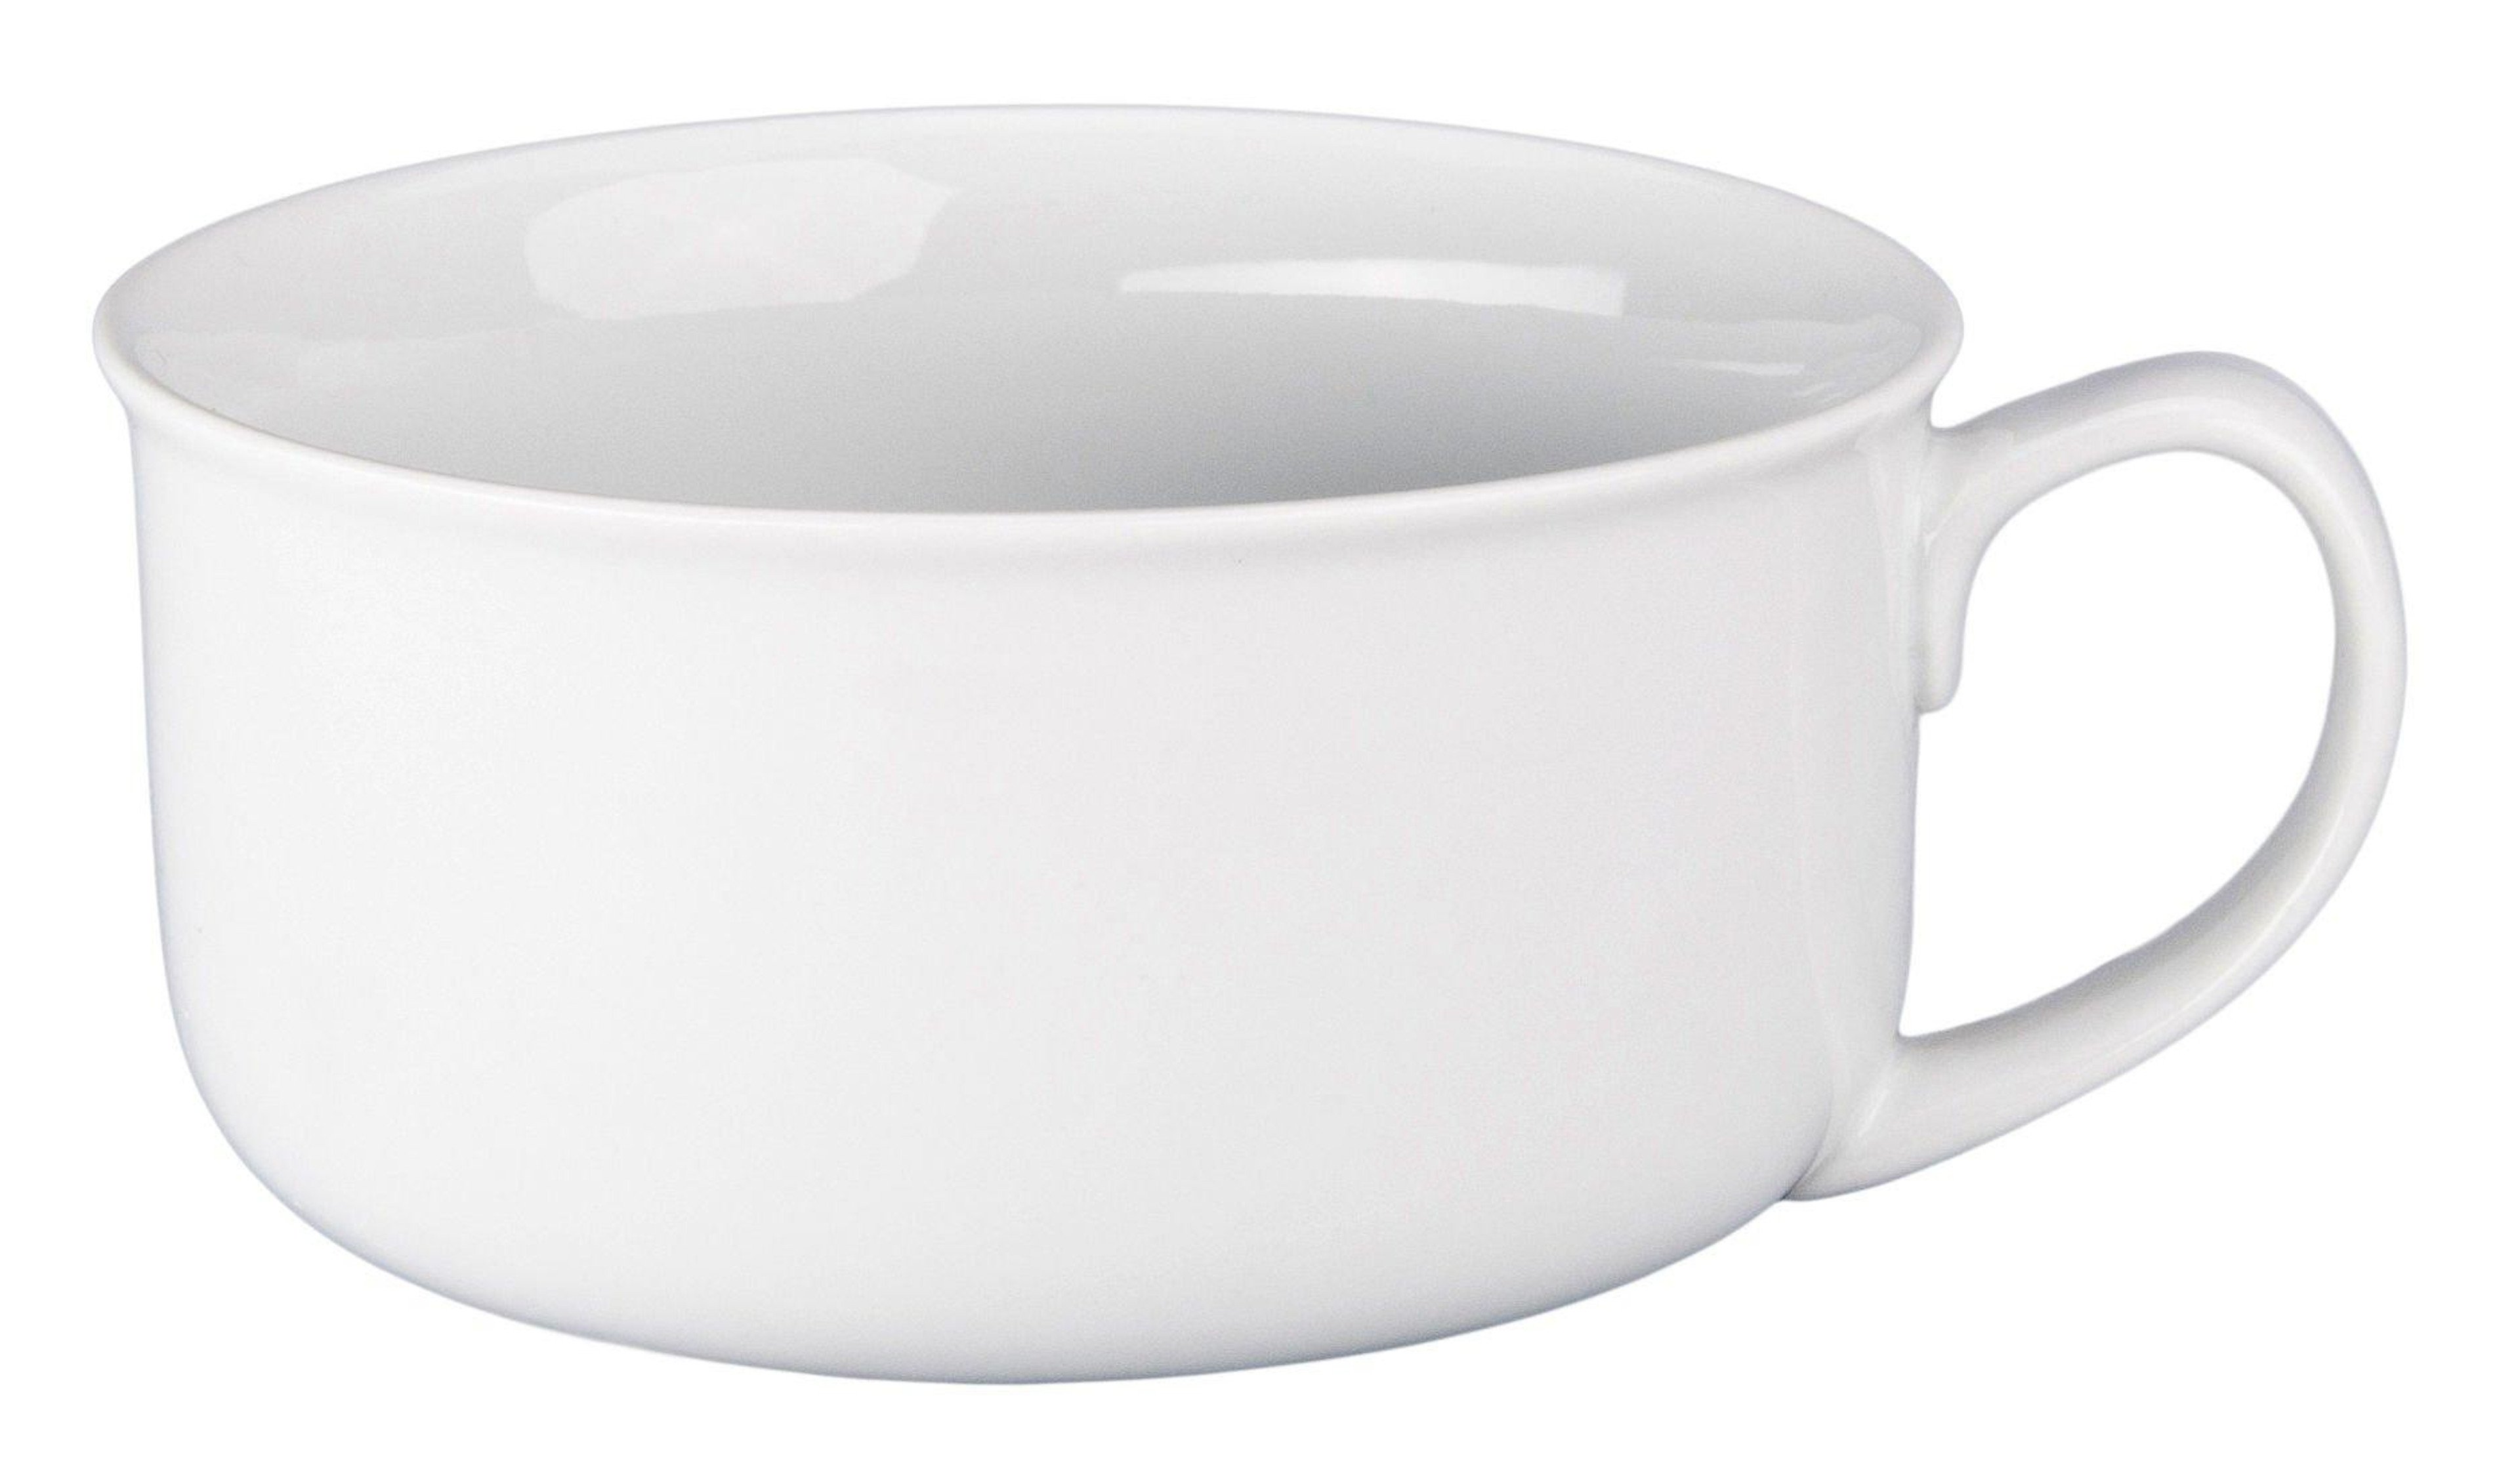 BIA Cordon Bleu, Inc. 20 oz. White Soup Bowl ||P000176477||